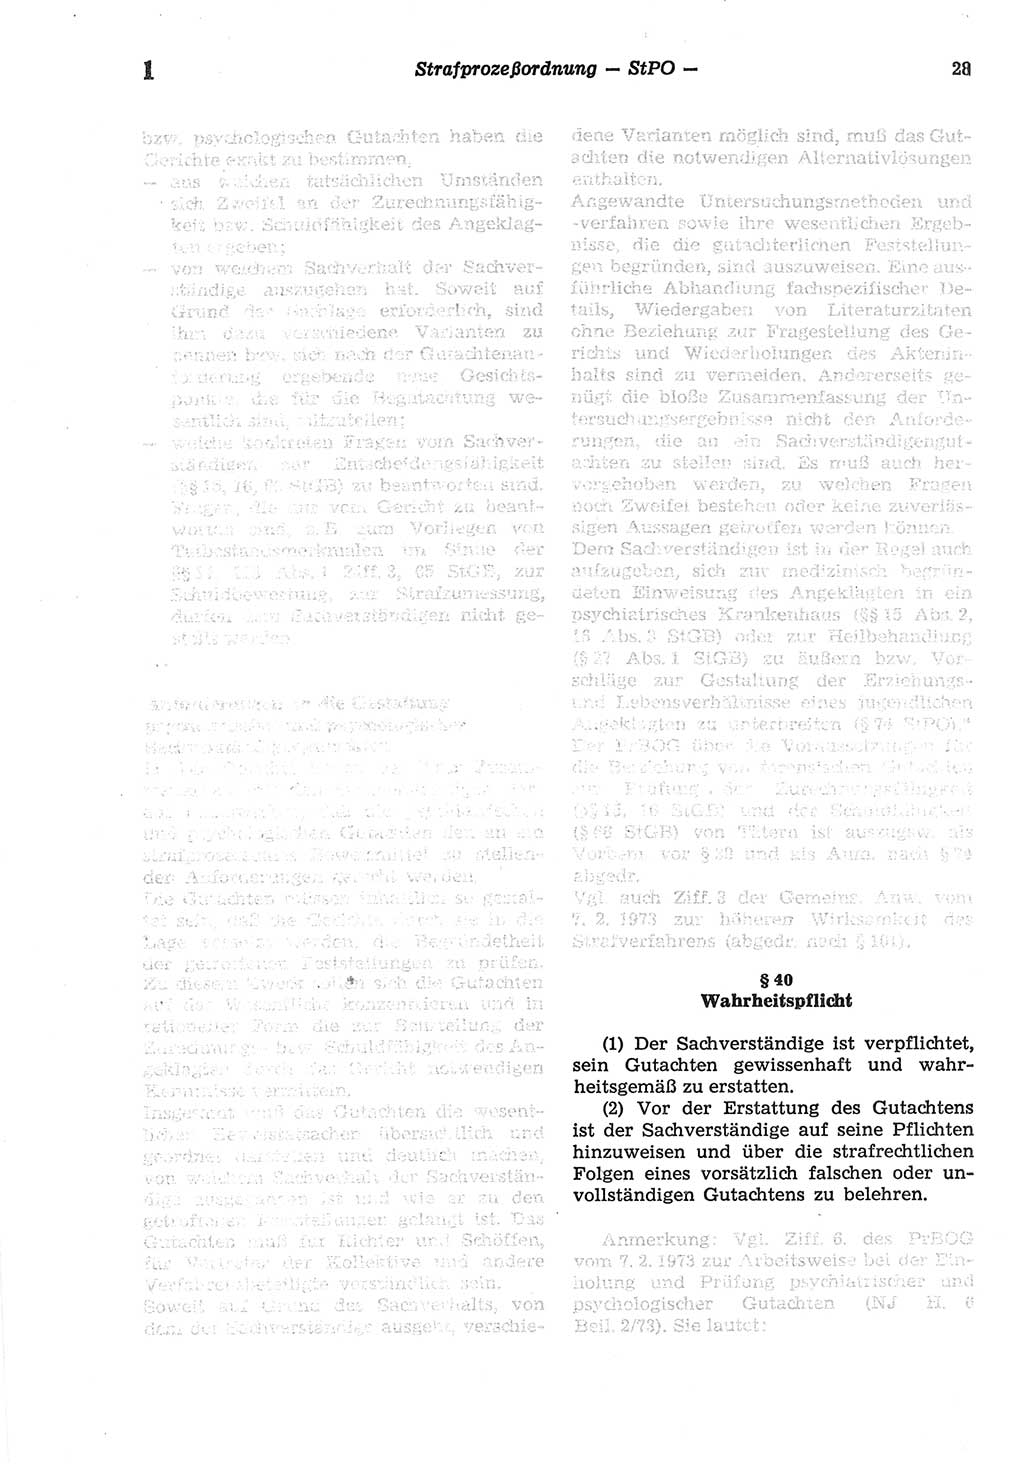 Strafprozeßordnung (StPO) der Deutschen Demokratischen Republik (DDR) sowie angrenzende Gesetze und Bestimmungen 1977, Seite 28 (StPO DDR Ges. Best. 1977, S. 28)